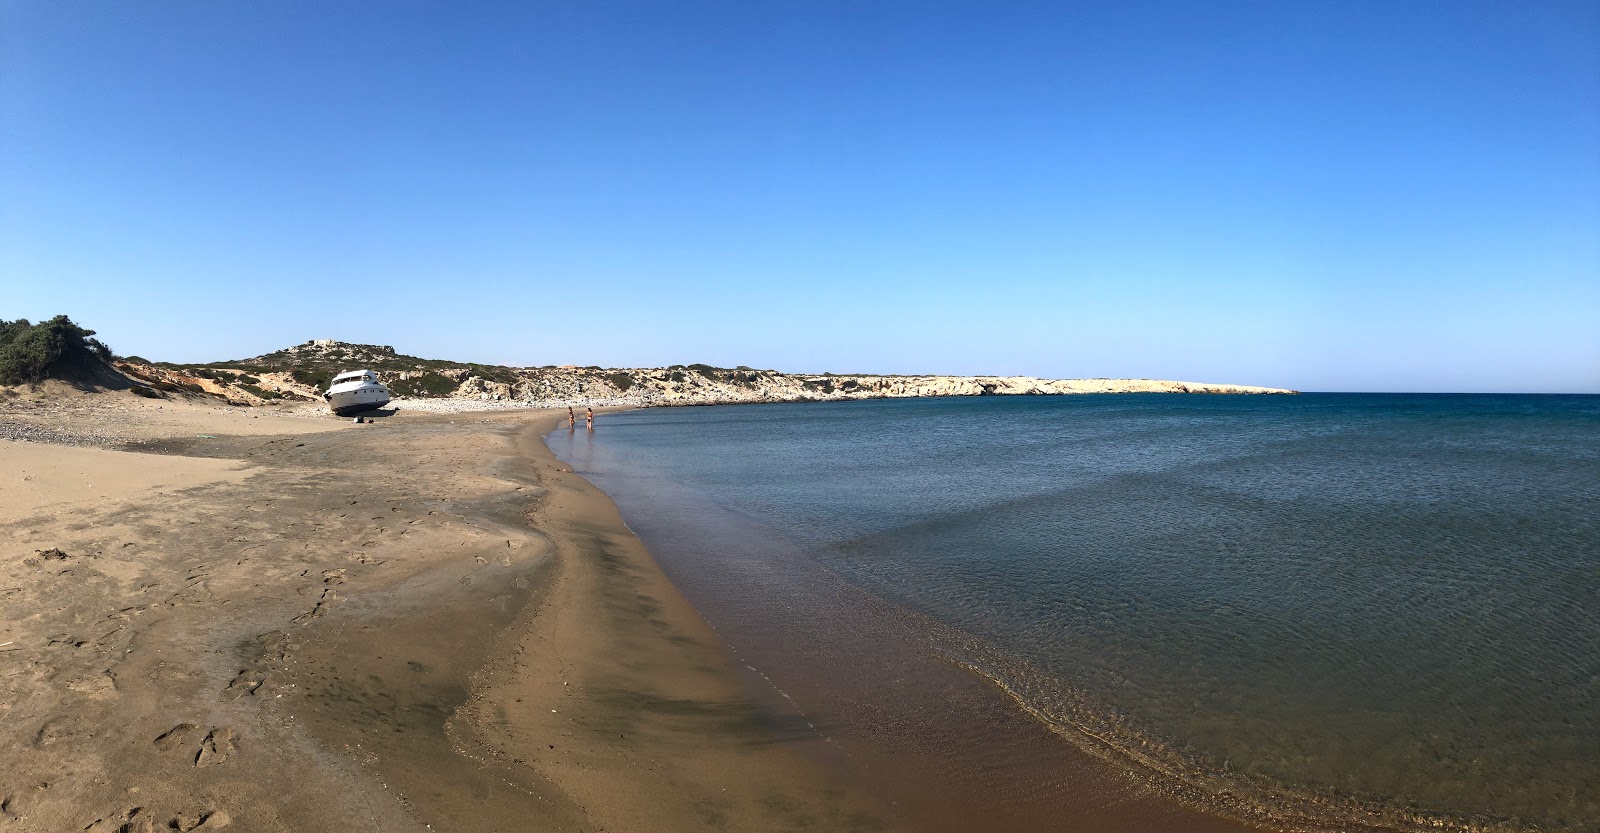 Agios Georgios Beach II'in fotoğrafı siyah kum ve çakıl yüzey ile